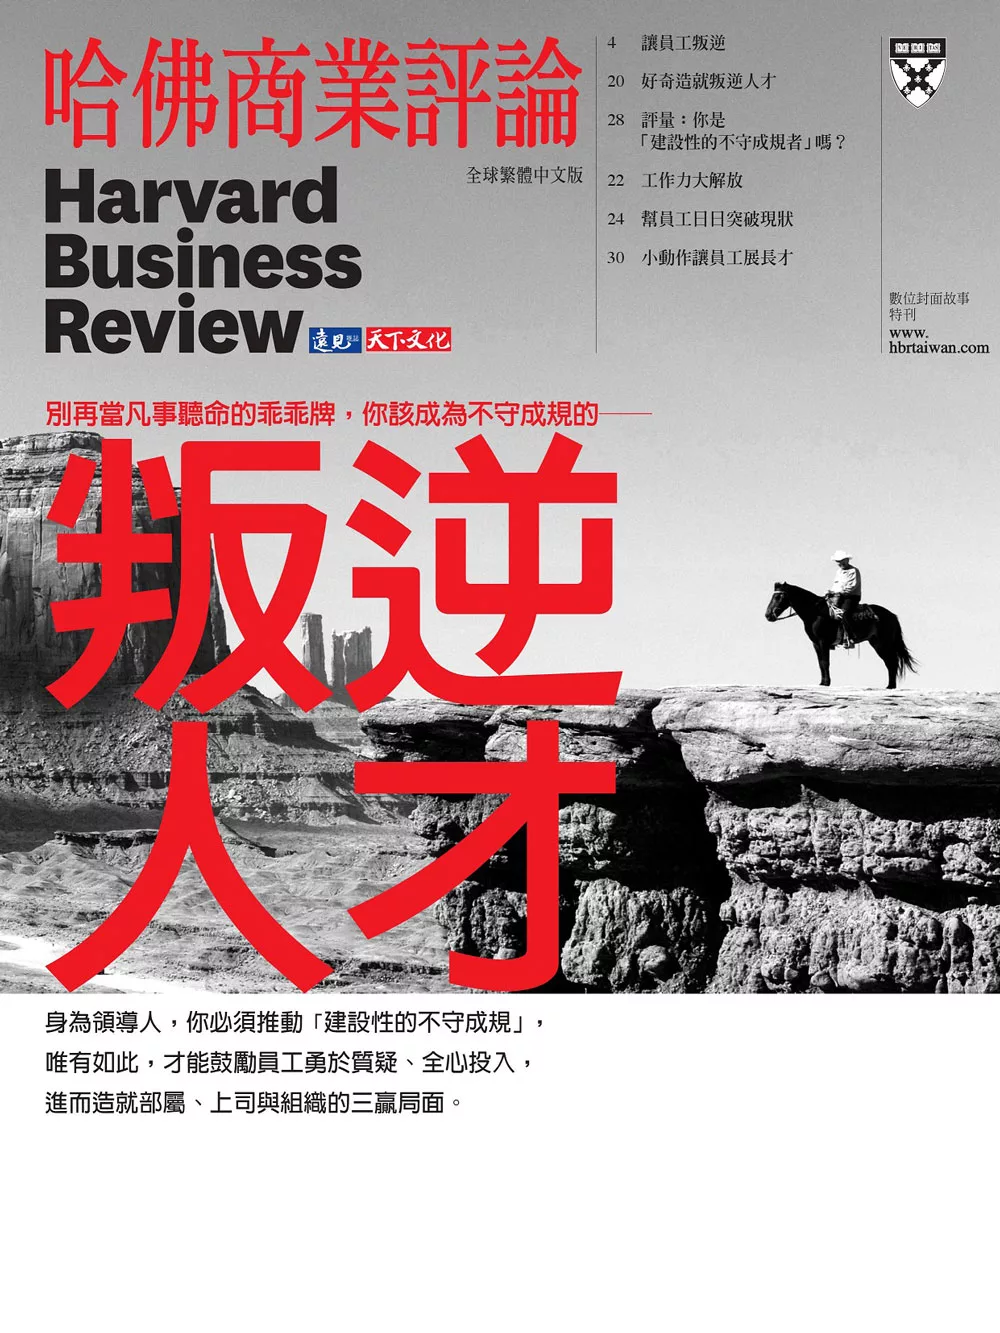 哈佛商業評論全球中文版 叛逆人才 (電子雜誌)